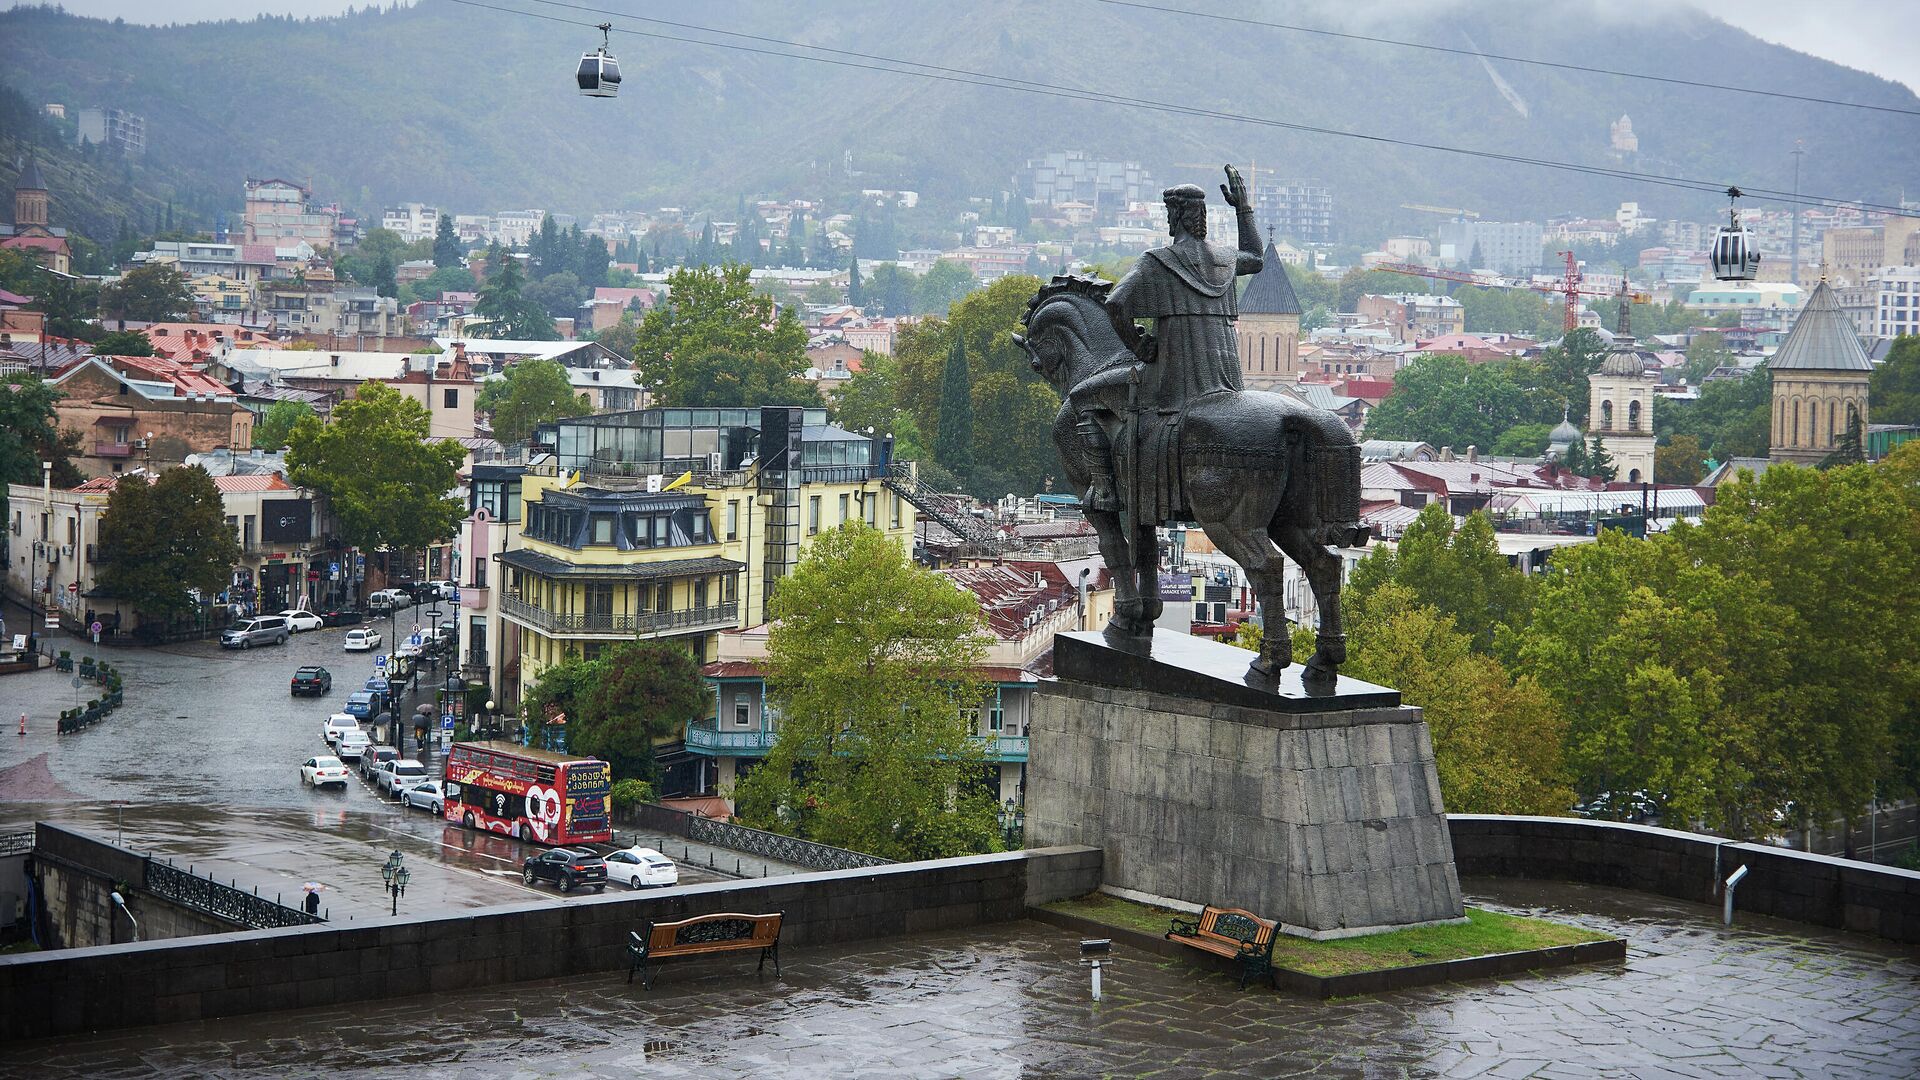 Вид на город Тбилиси в пасмурную погоду - Мтацминда и памятник Вахтангу Горгасали - Sputnik Грузия, 1920, 21.10.2021